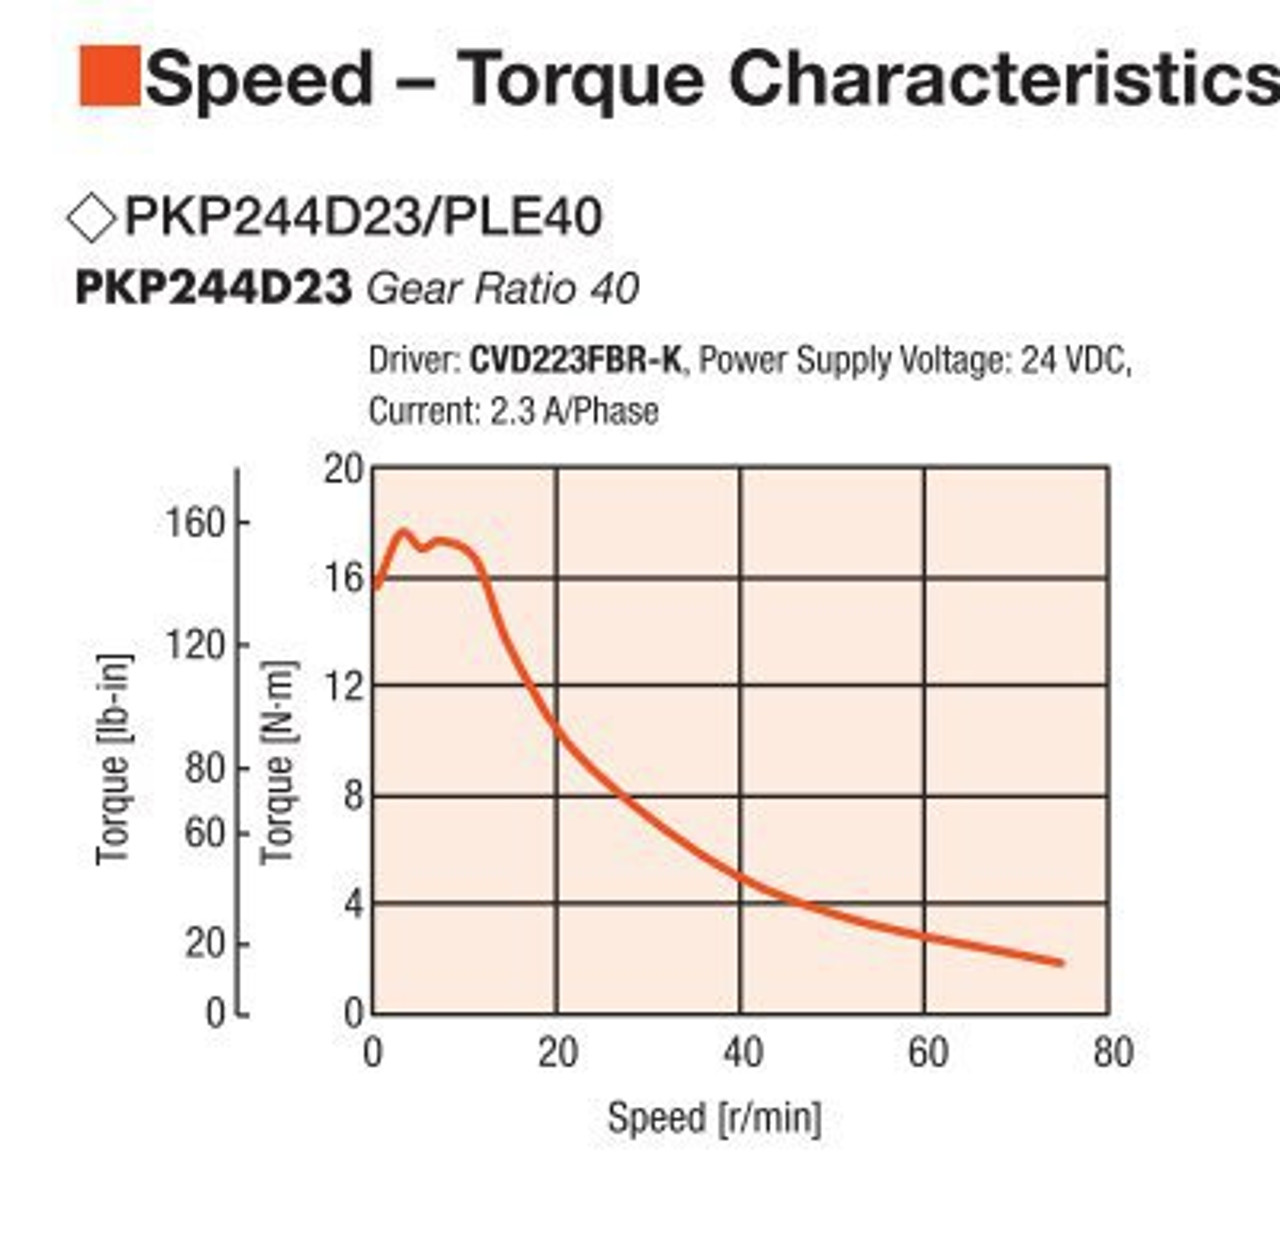 PKP244D23A2 / PLE40-40B / P00027 - Speed-Torque